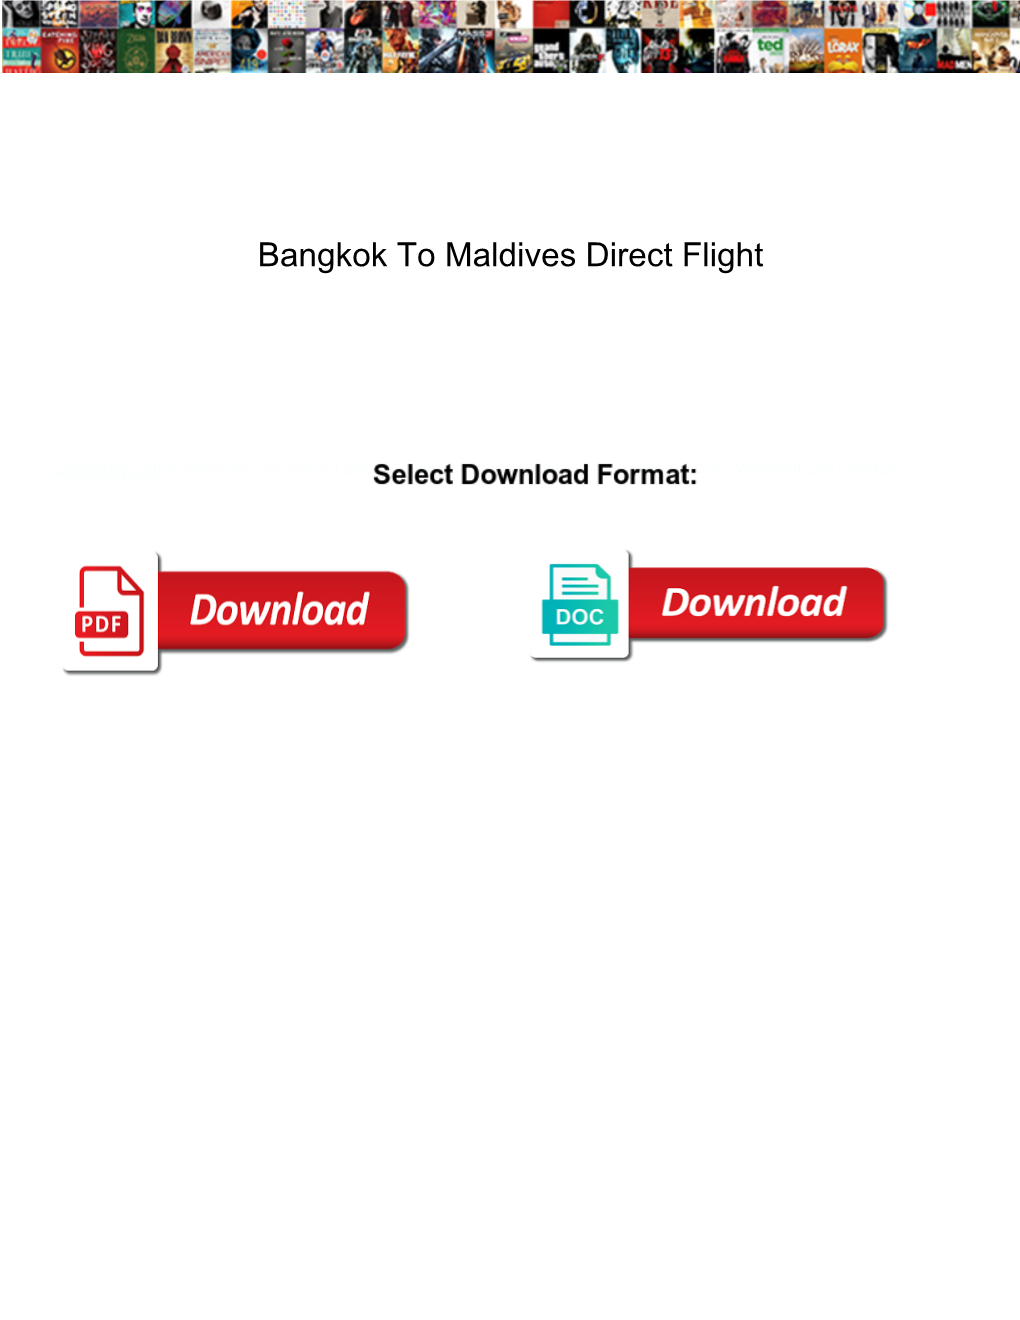 Bangkok to Maldives Direct Flight